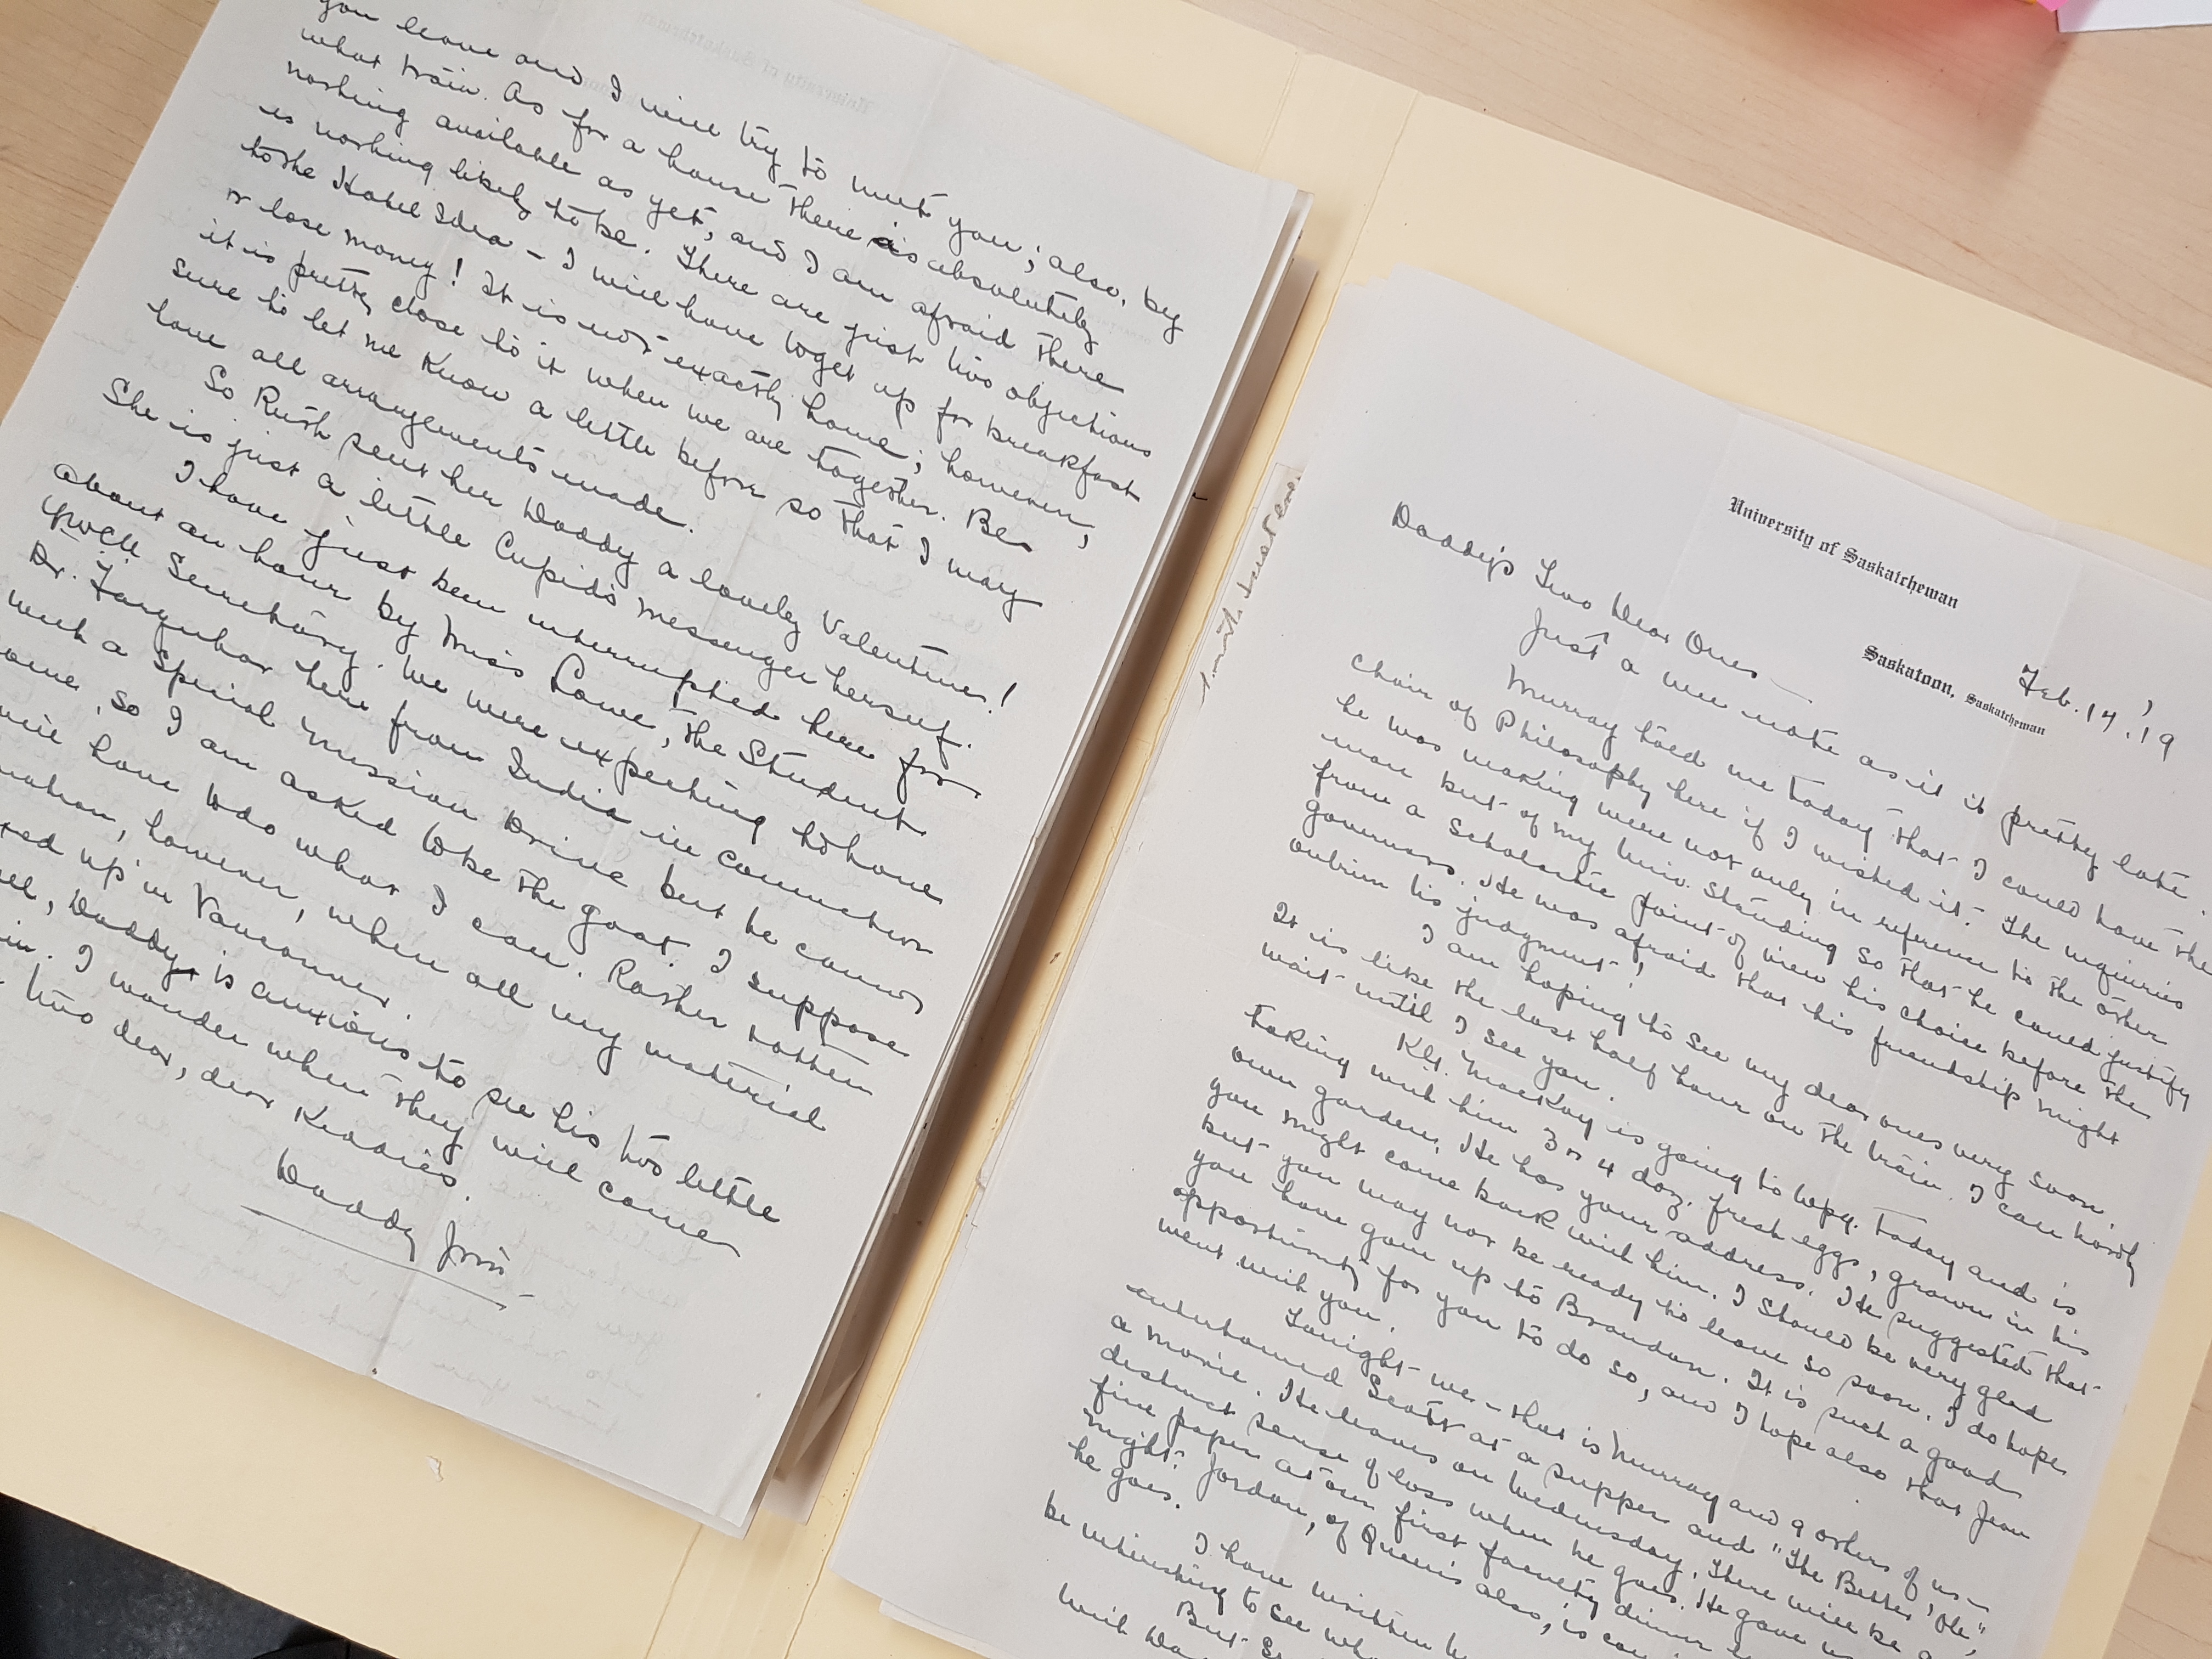 Photograph of handwritten documents inside a manila folder. 